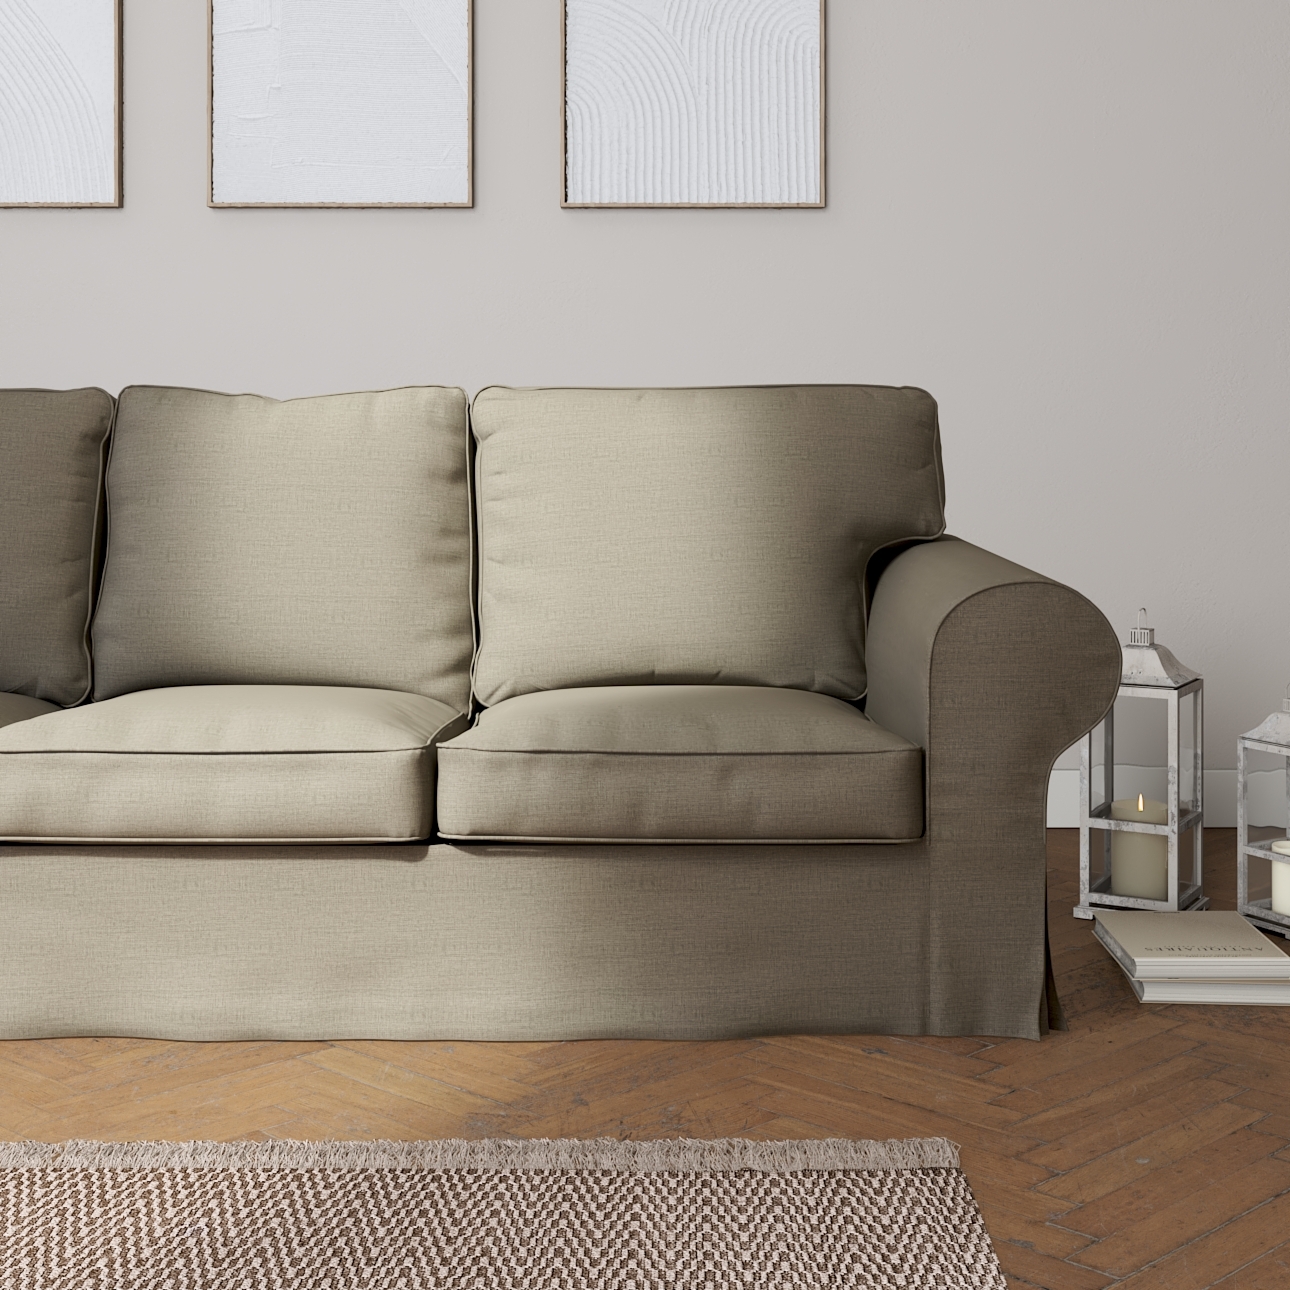 Bezug für Ektorp 3-Sitzer Sofa nicht ausklappbar, beige-grau, Sofabezug für günstig online kaufen